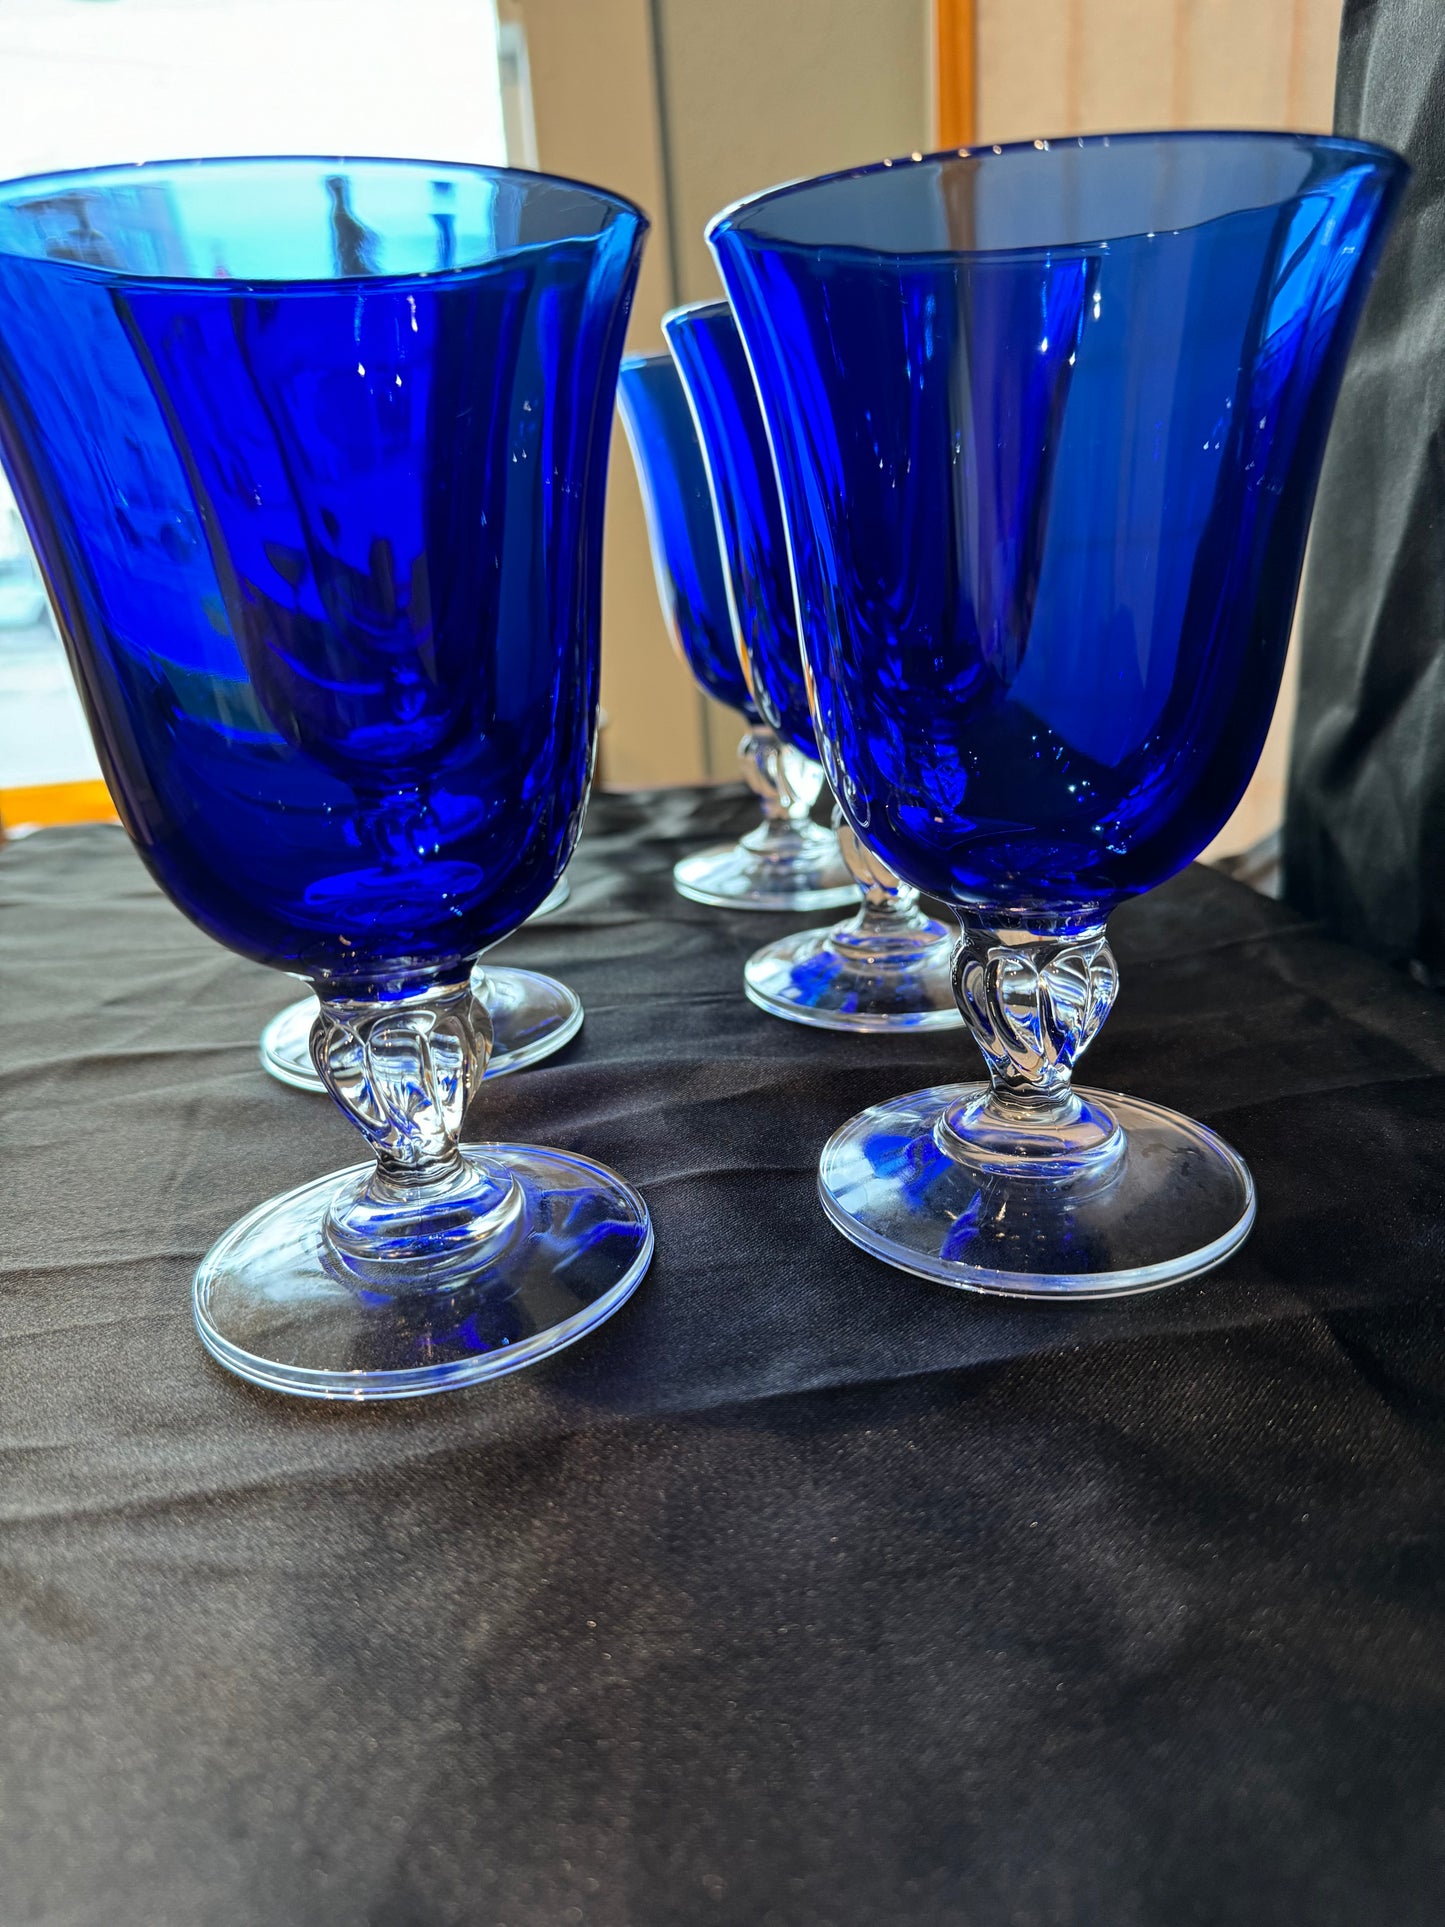 Cristal d'Arques Cobalt Blue Water Wine Goblet 6 1/2" Set of 6, vintage.